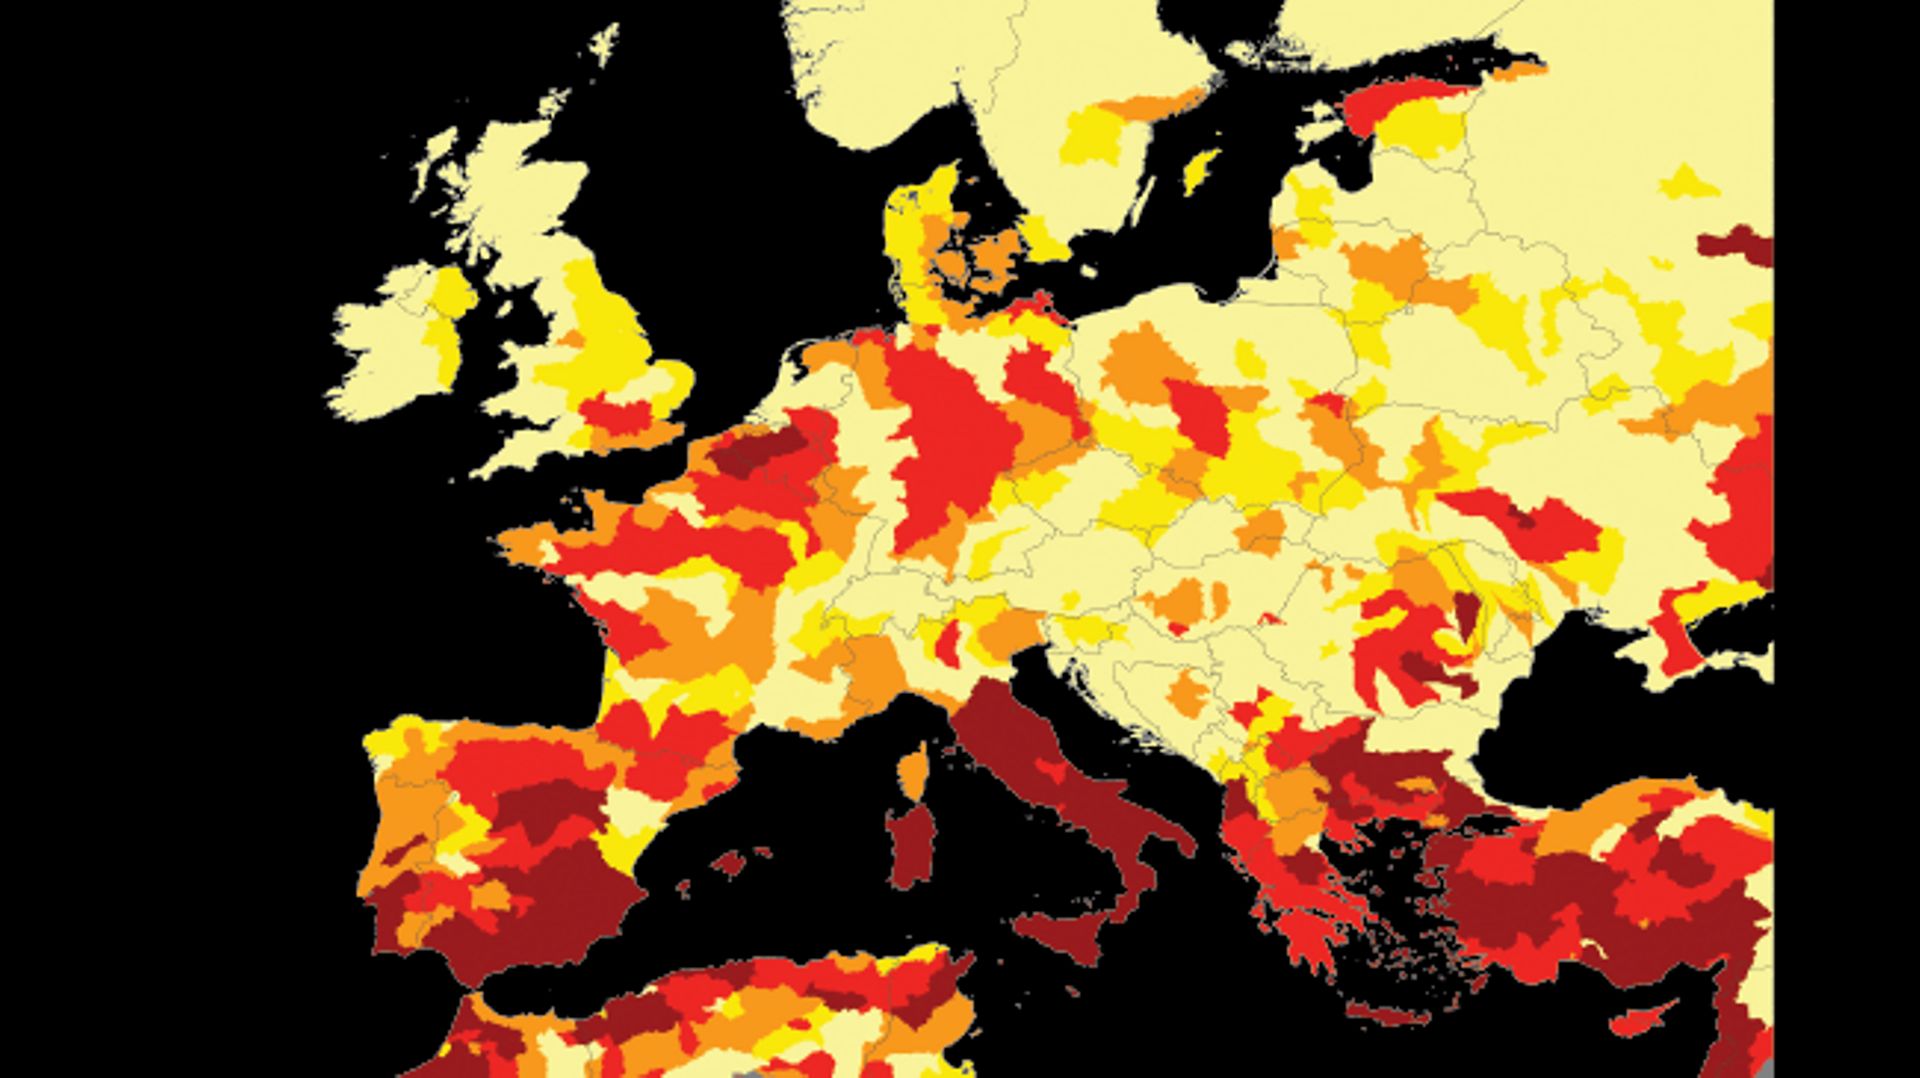 La Belgique est l’un des pays européens qui connaît le plus haut risque de pénurie d’eau